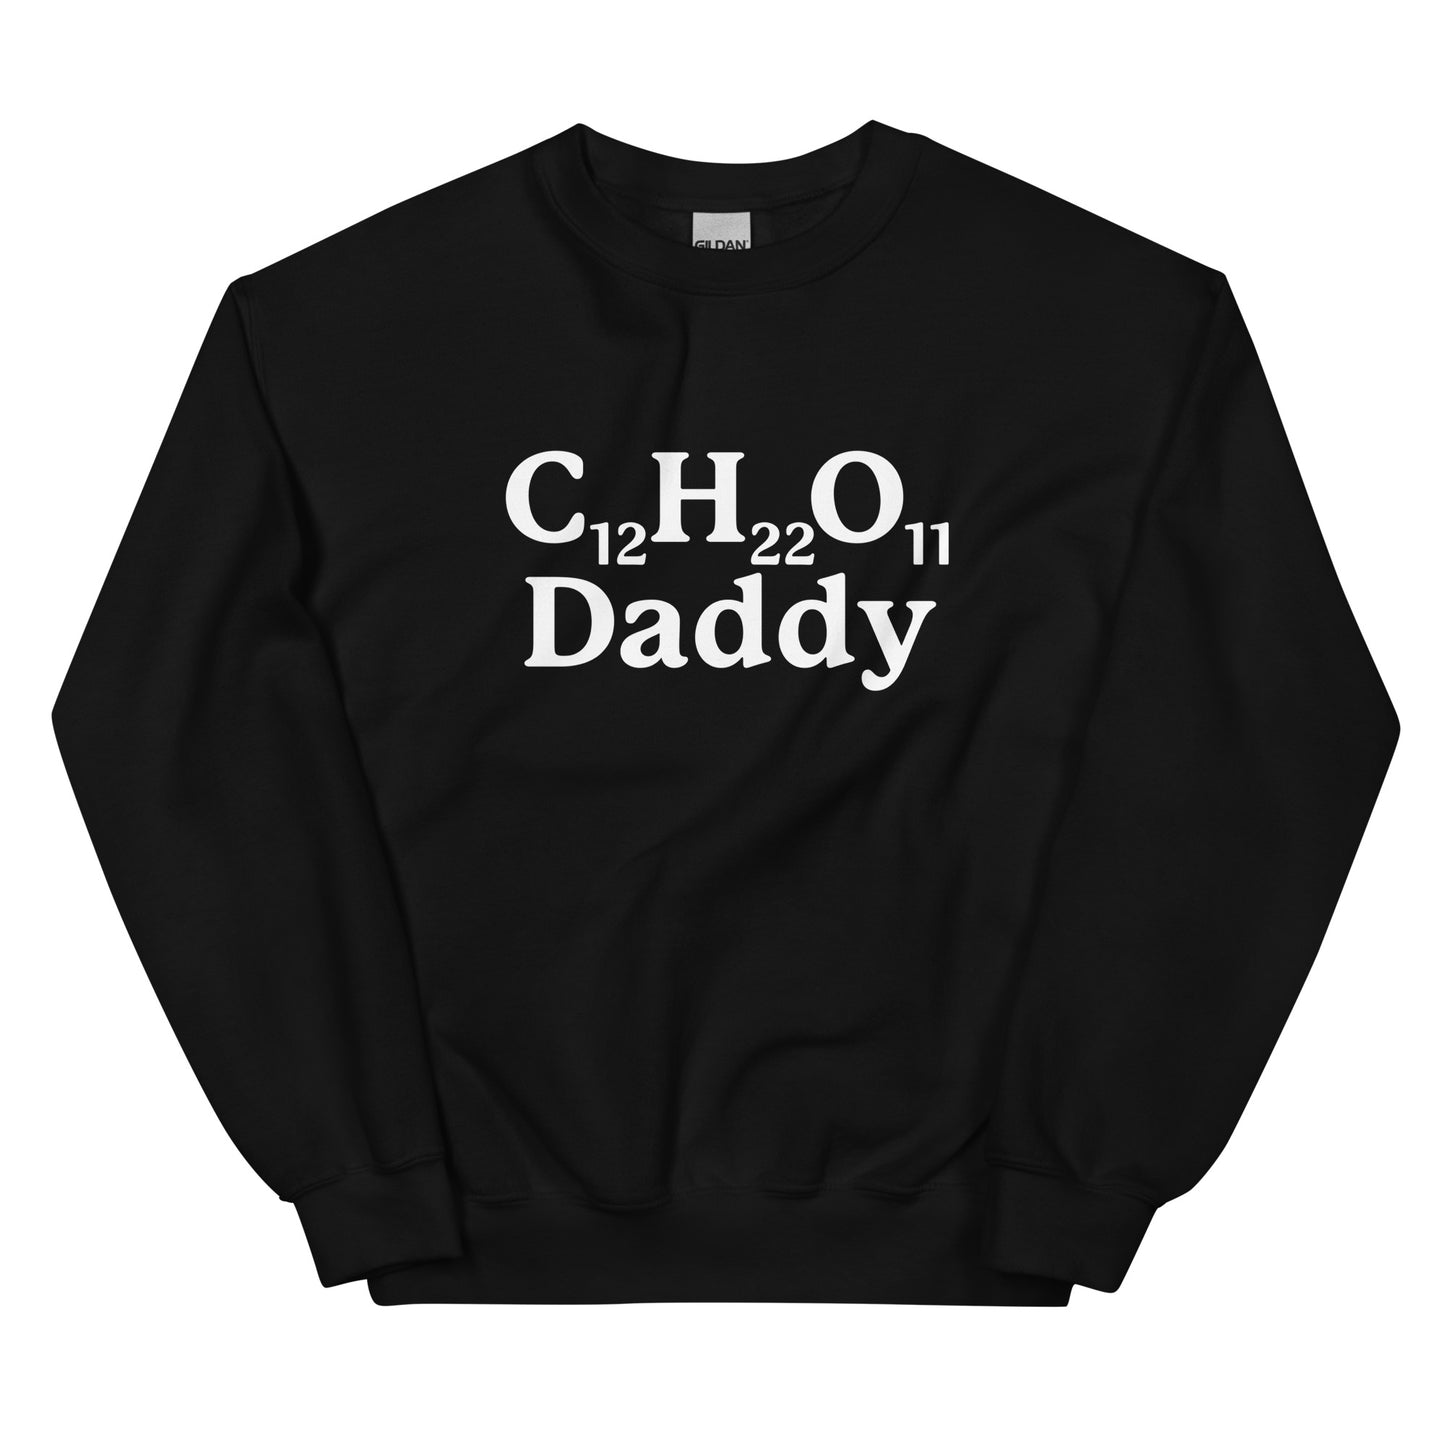 C12H22O11 Daddy (Sugar Daddy) Unisex Sweatshirt